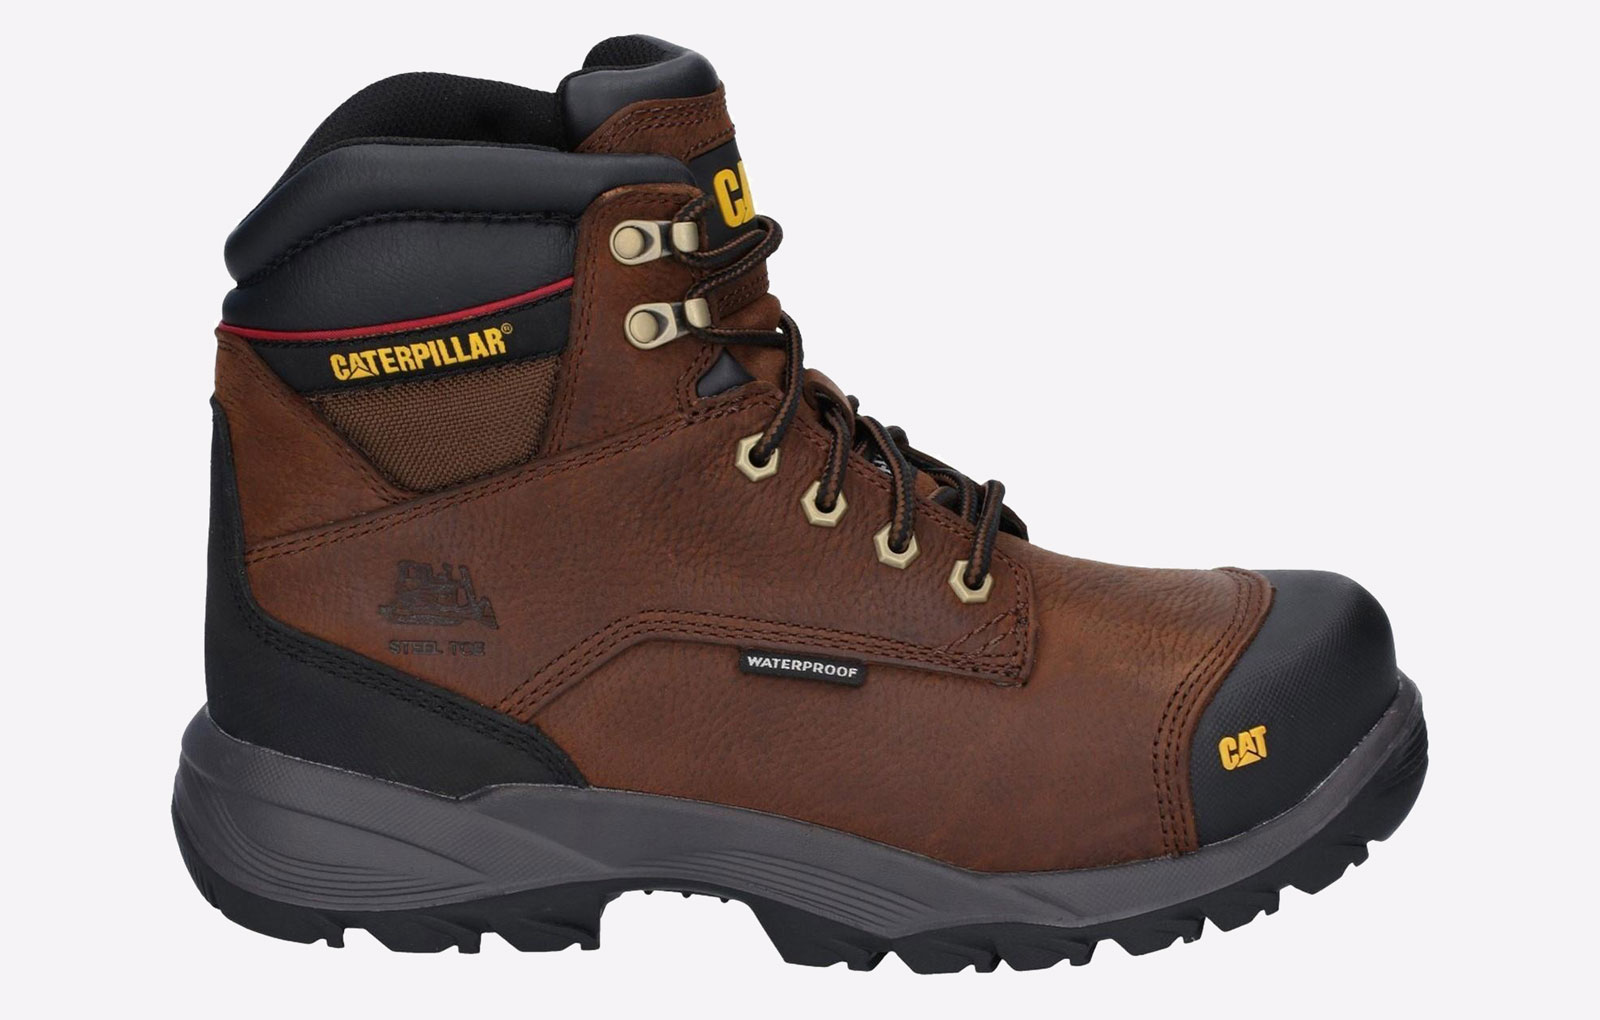 Caterpillar Spiro WATERPROOF Safety Boots Mens - GRD-29663-50266-11